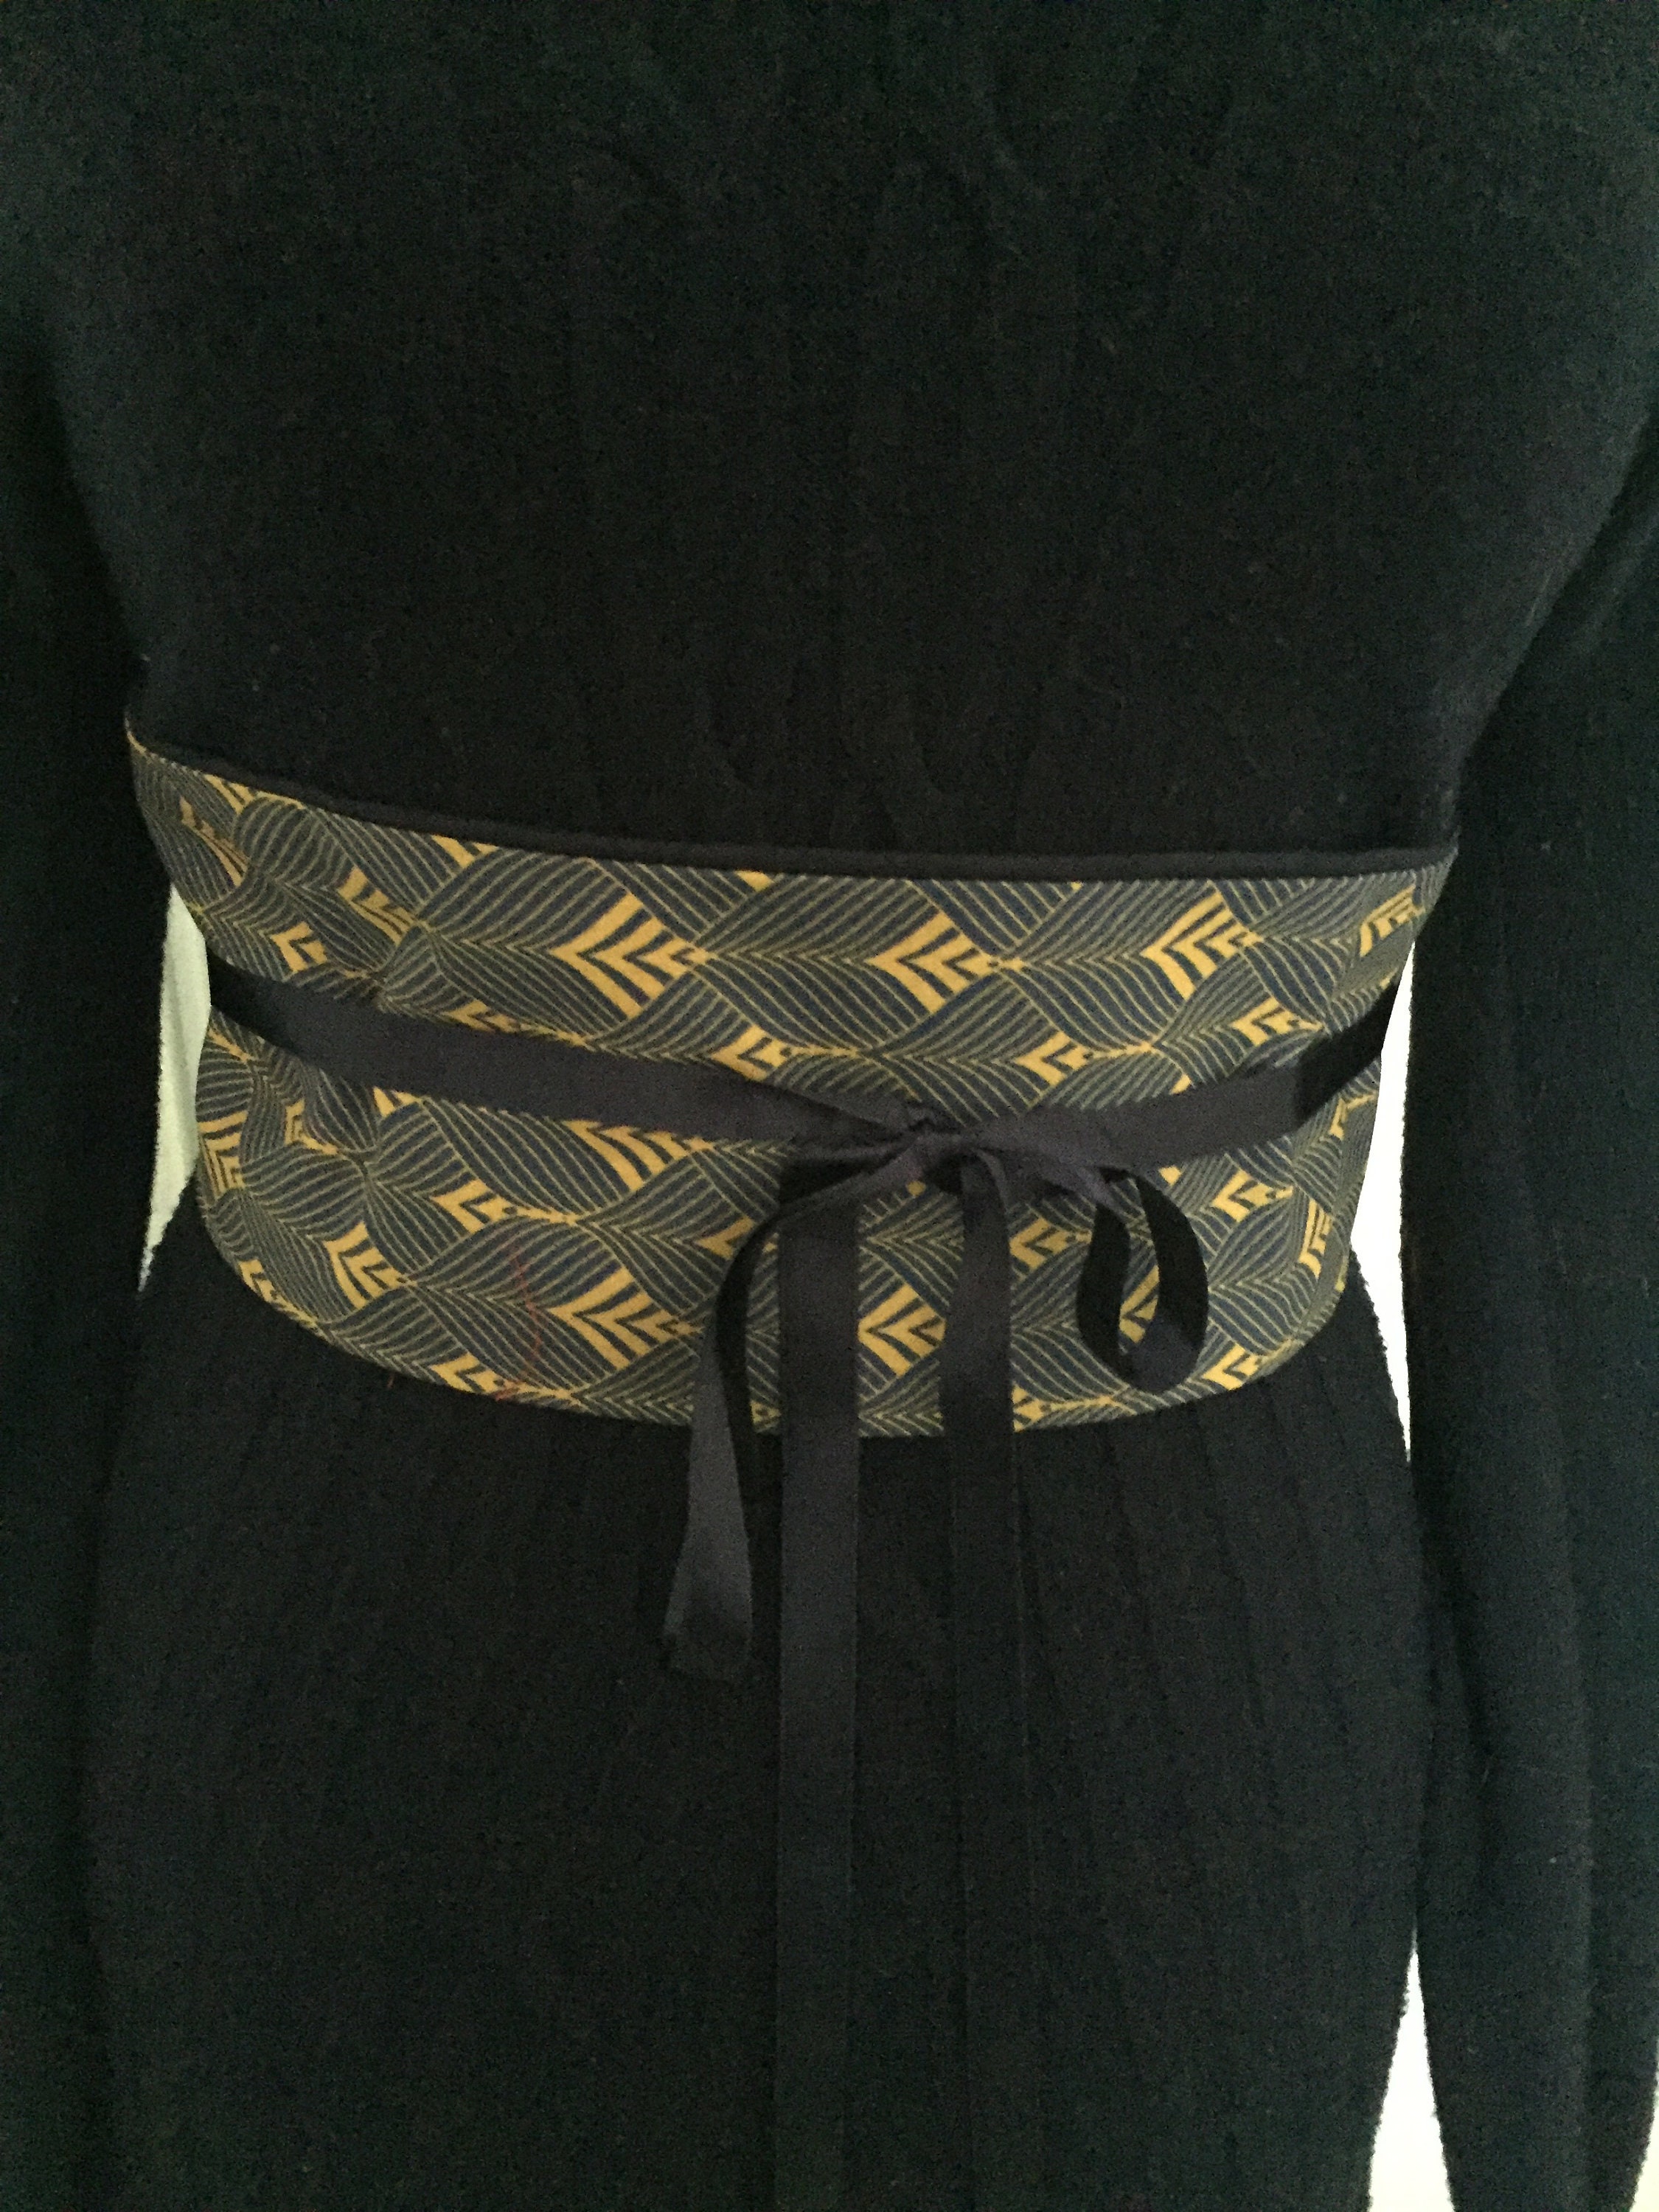 Wide Waist Knot Belt, Obi Belt - Turquoise African print